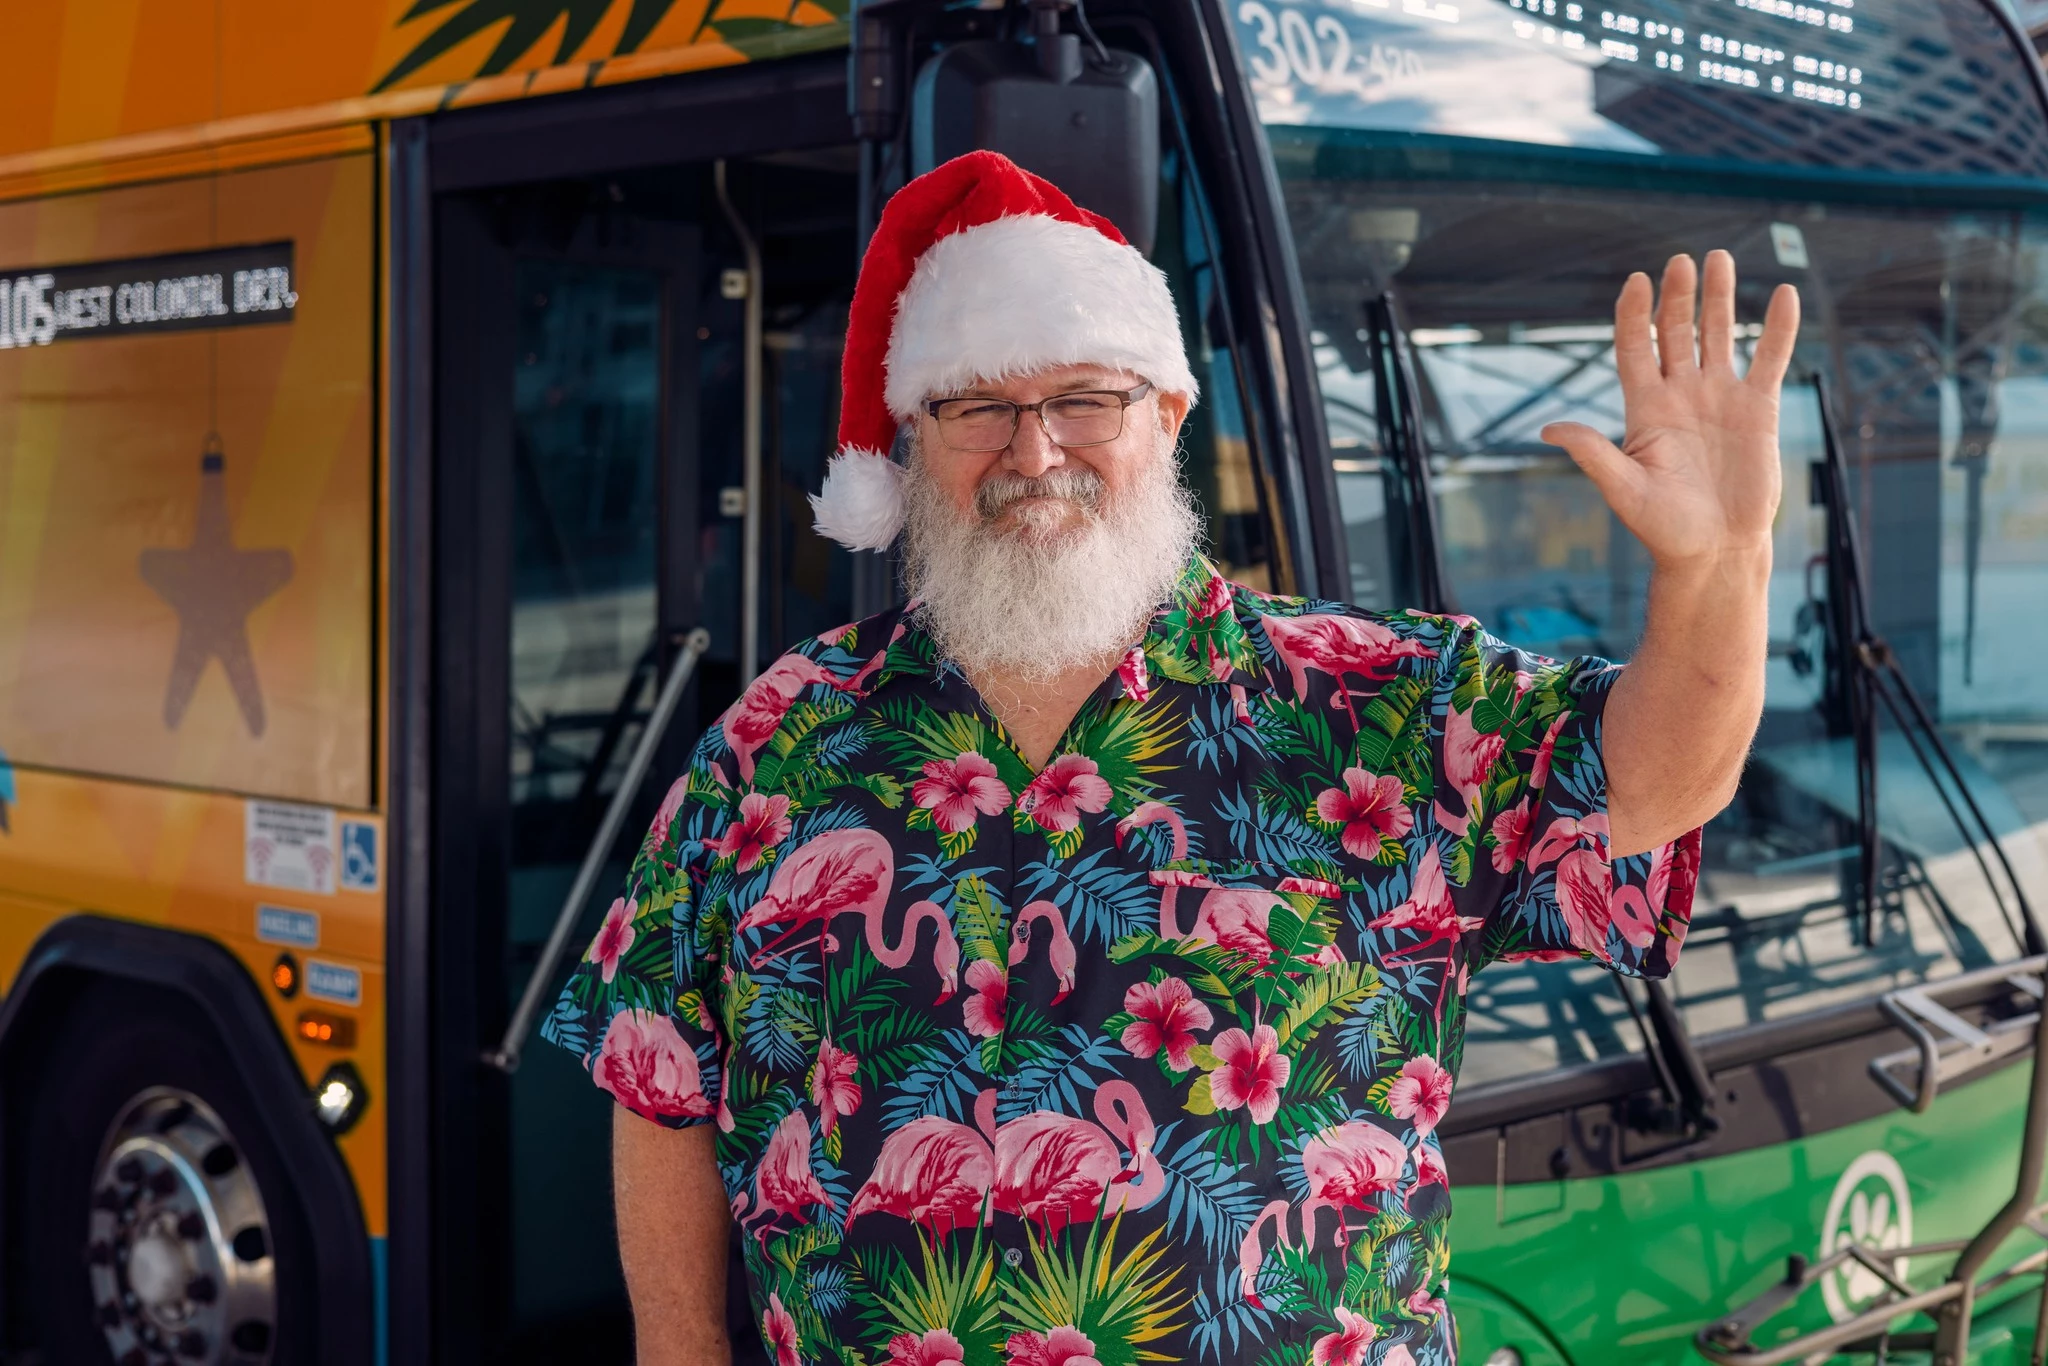 Is Santa Claus Driving a Fun New Sleigh in St. Cloud?